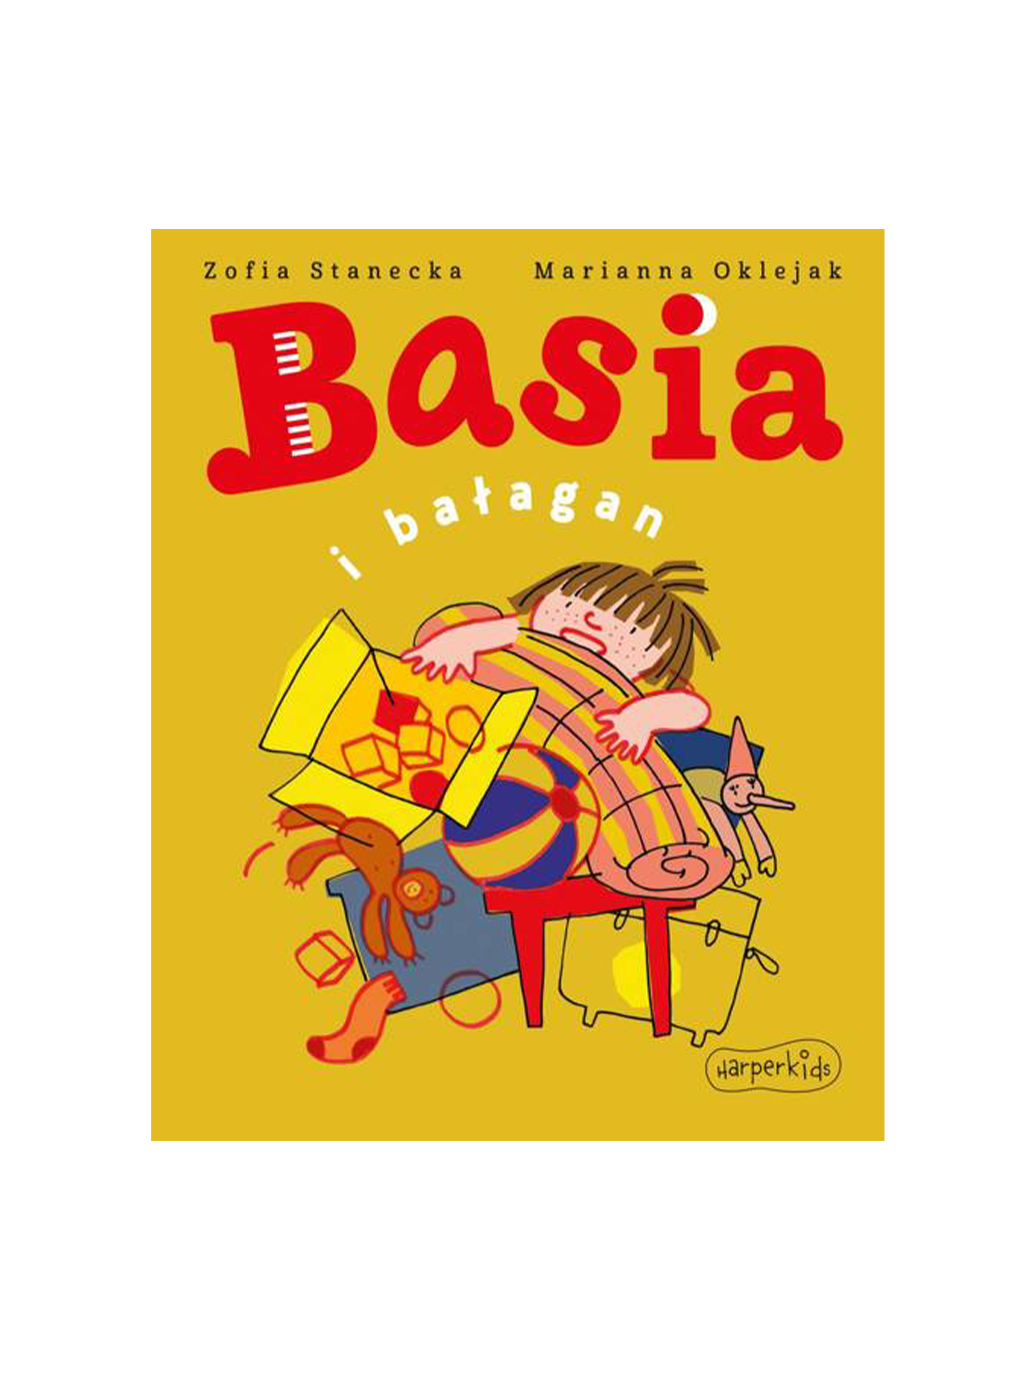 Basi et Balagan